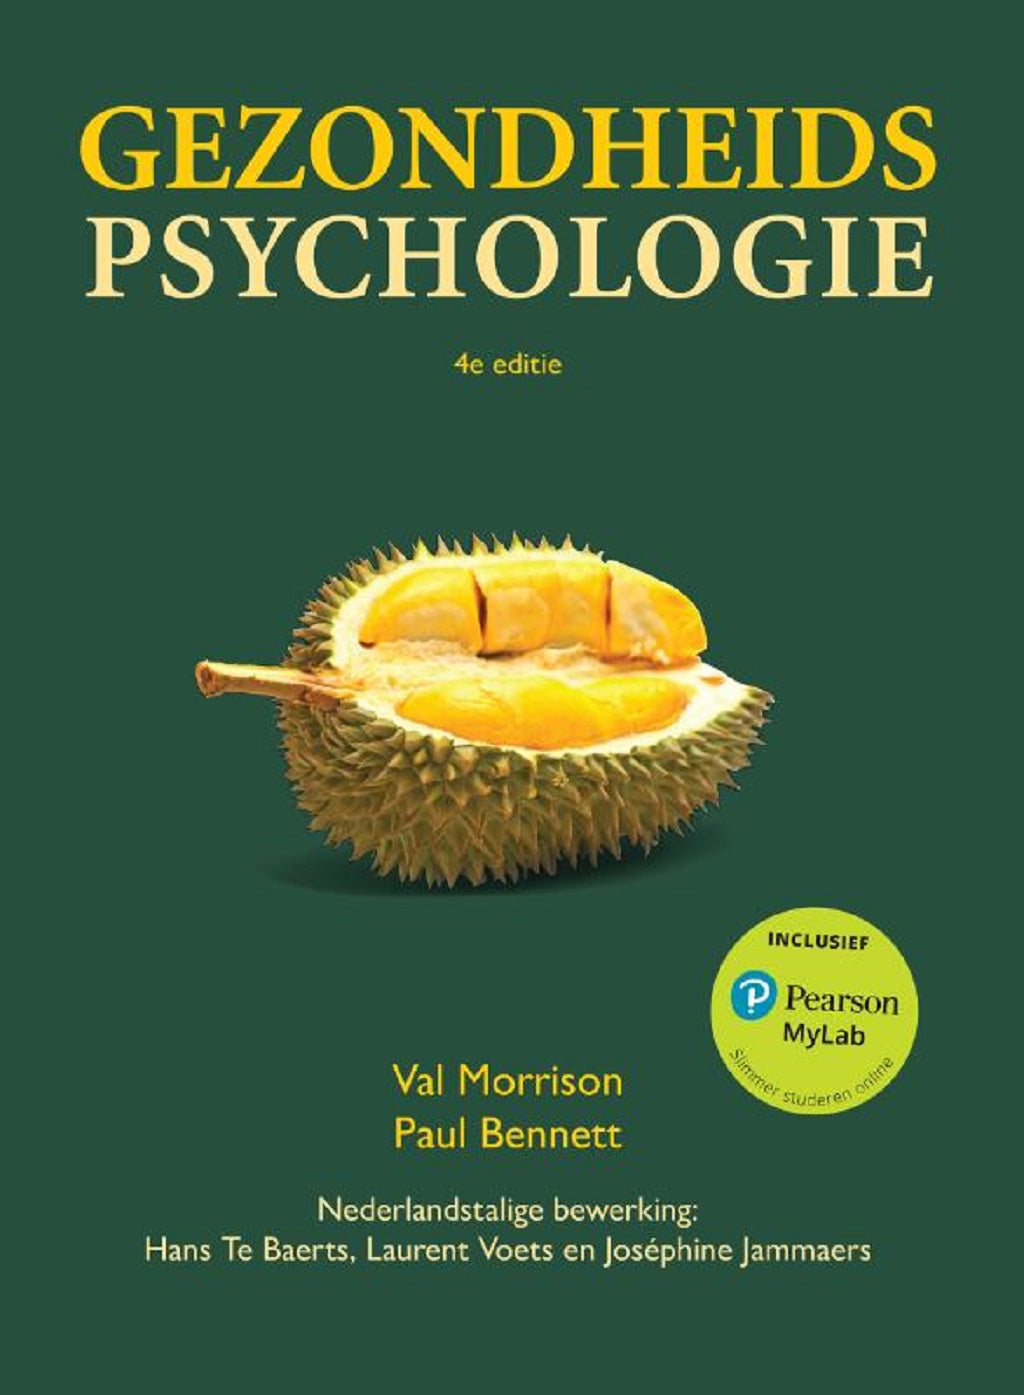 Gezondheidspsychologie, 4e editie (Print boek + MyLab toegangscode)